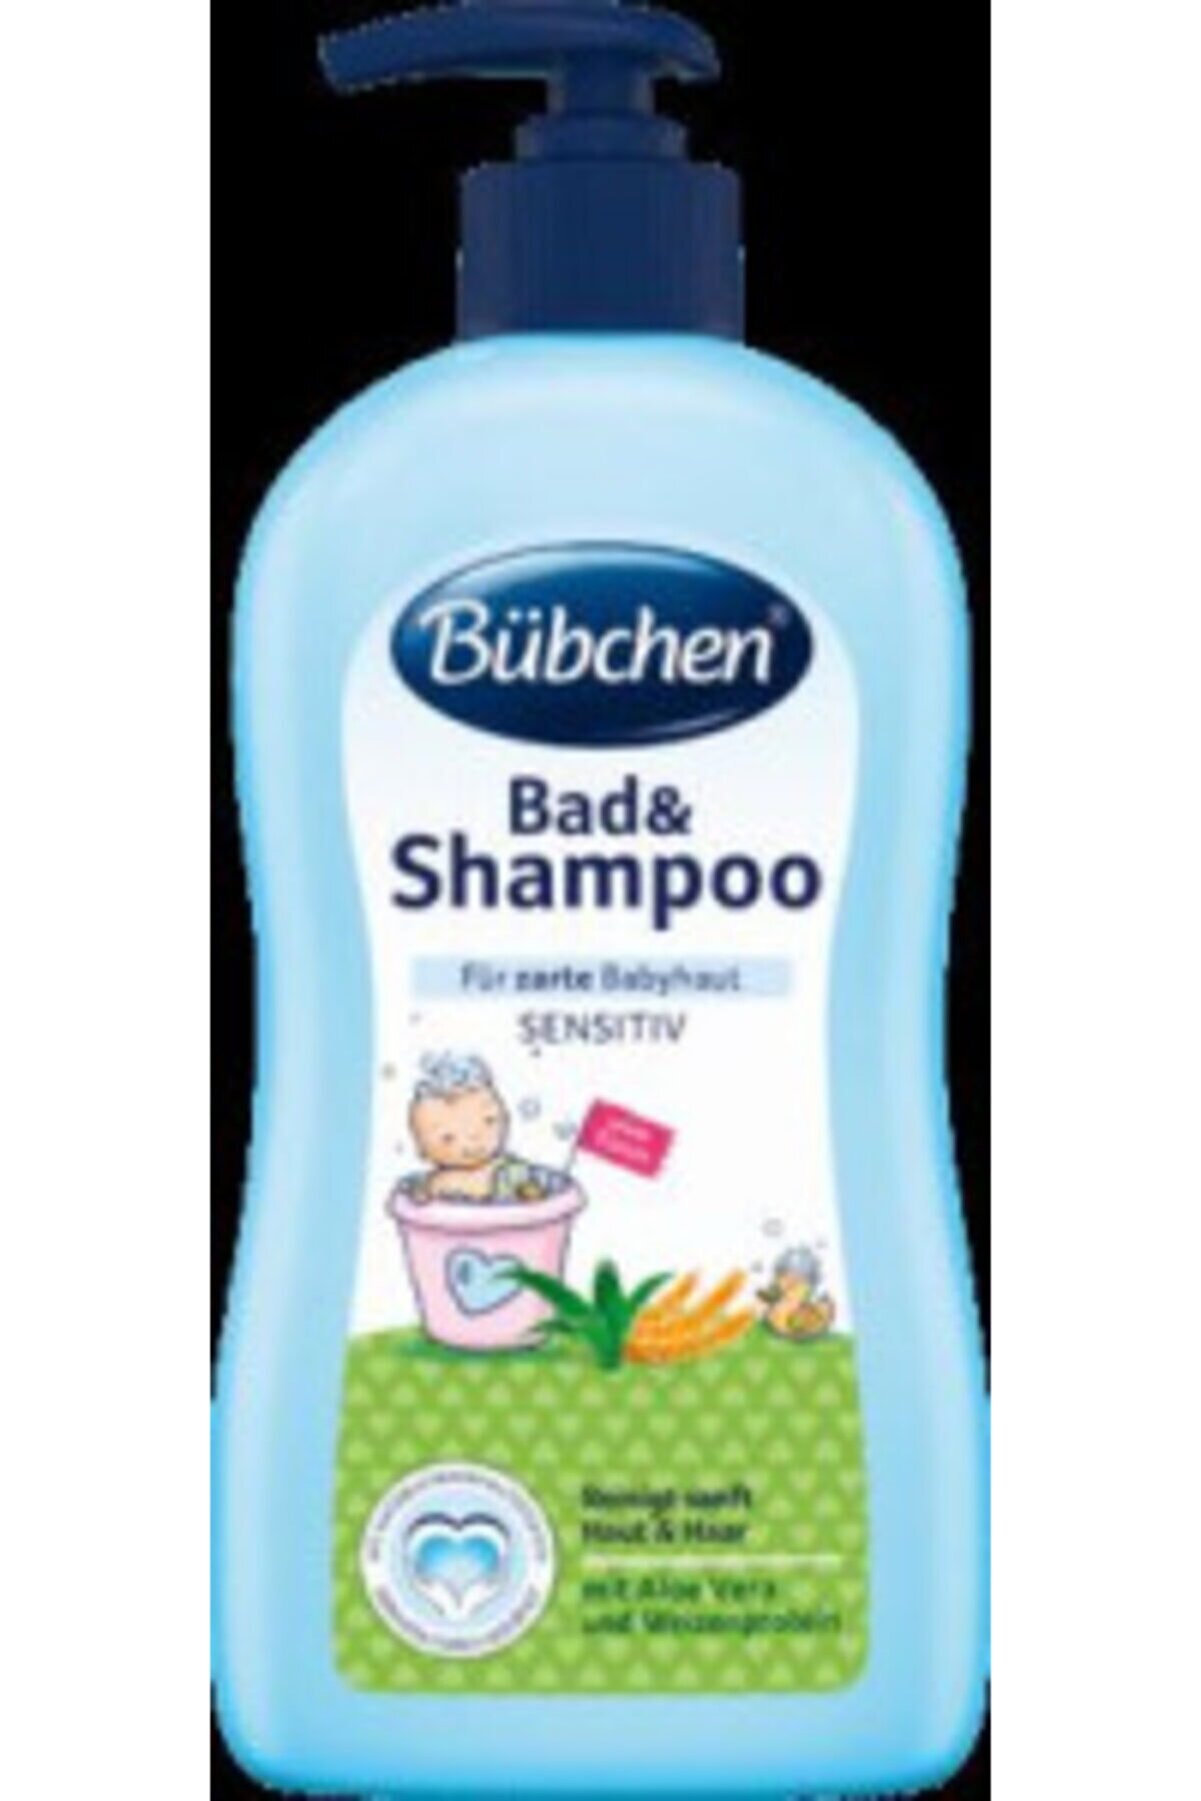 4moms Bübchen Bad Shampoo 400ml